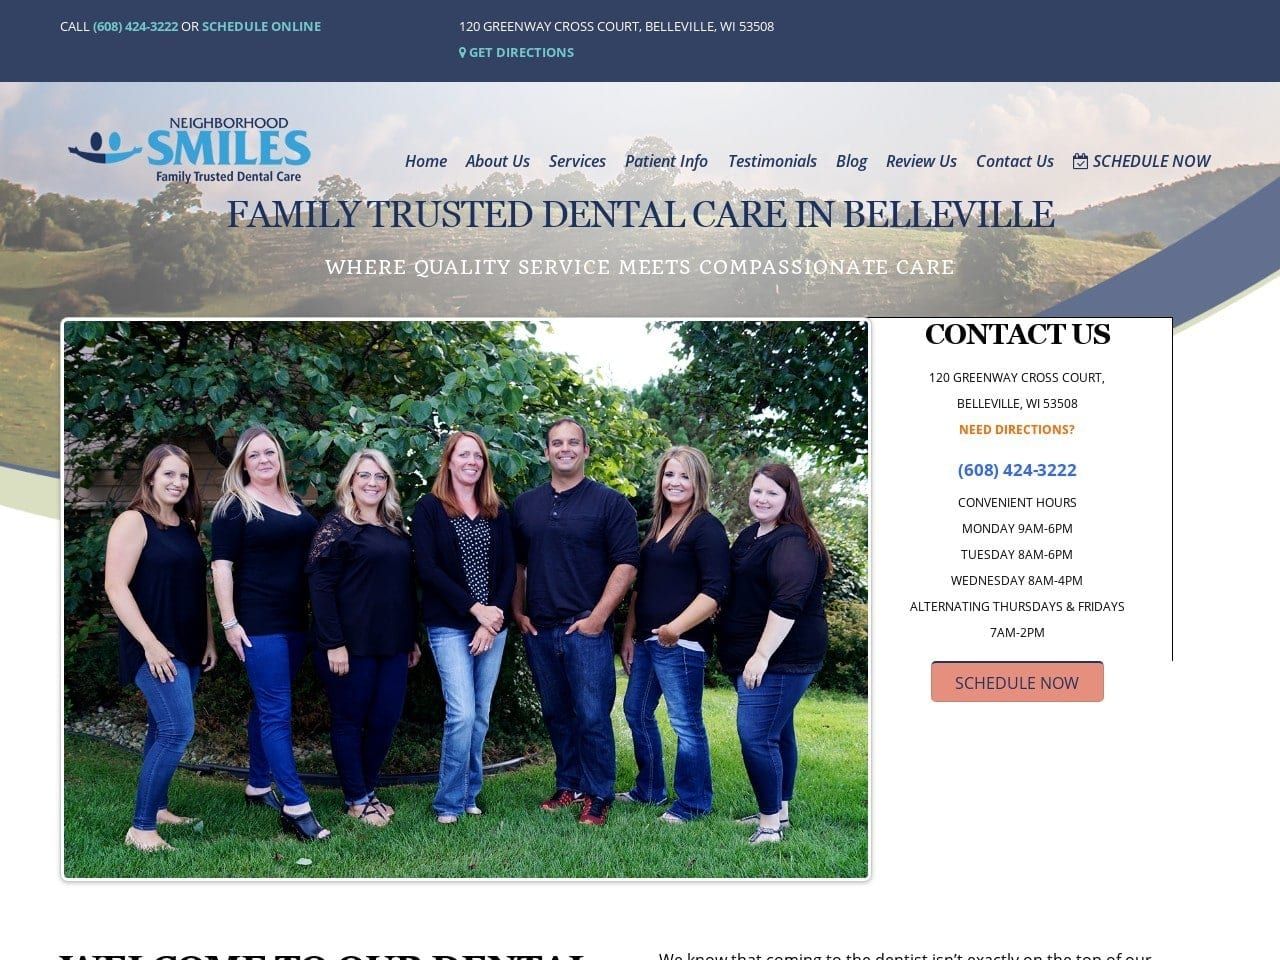 Neighborhood Smiles Dental Care Belleville WI Website Screenshot from smilesbelleville.com